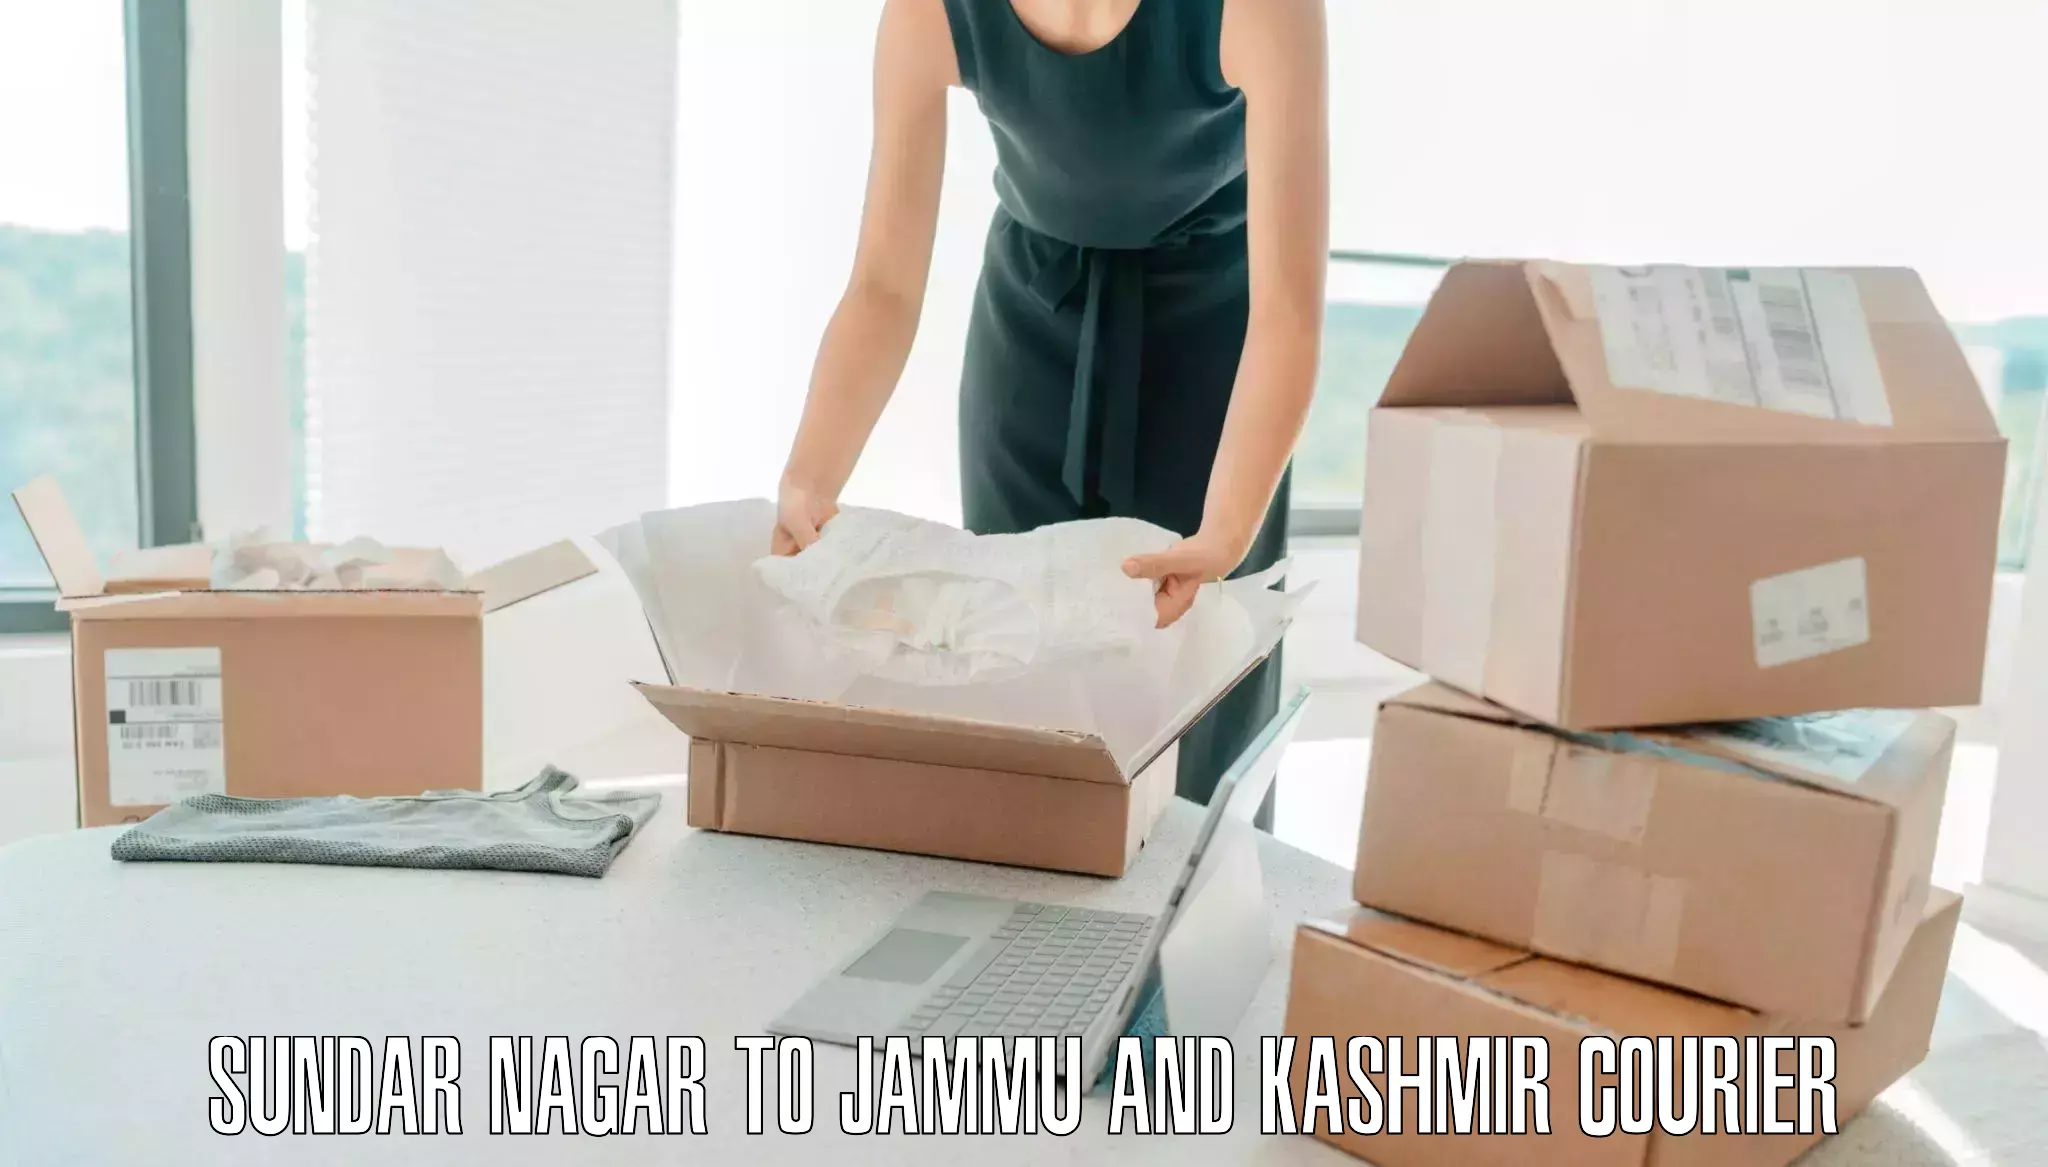 Door-to-door baggage service Sundar Nagar to Jammu and Kashmir